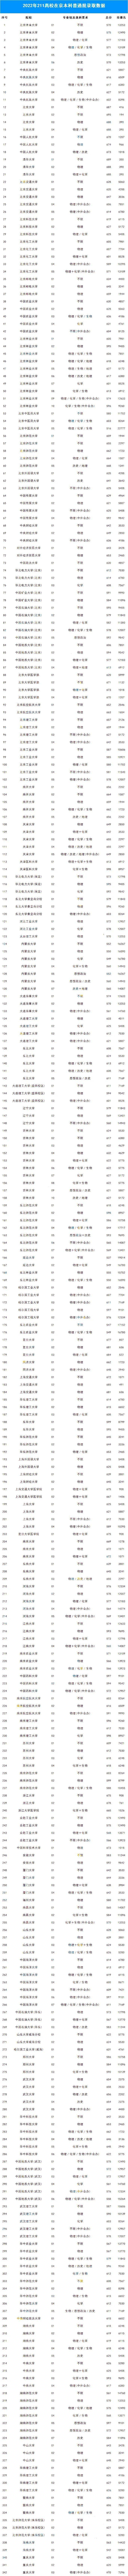 全国116所211院校在京录取分数及市排名-1